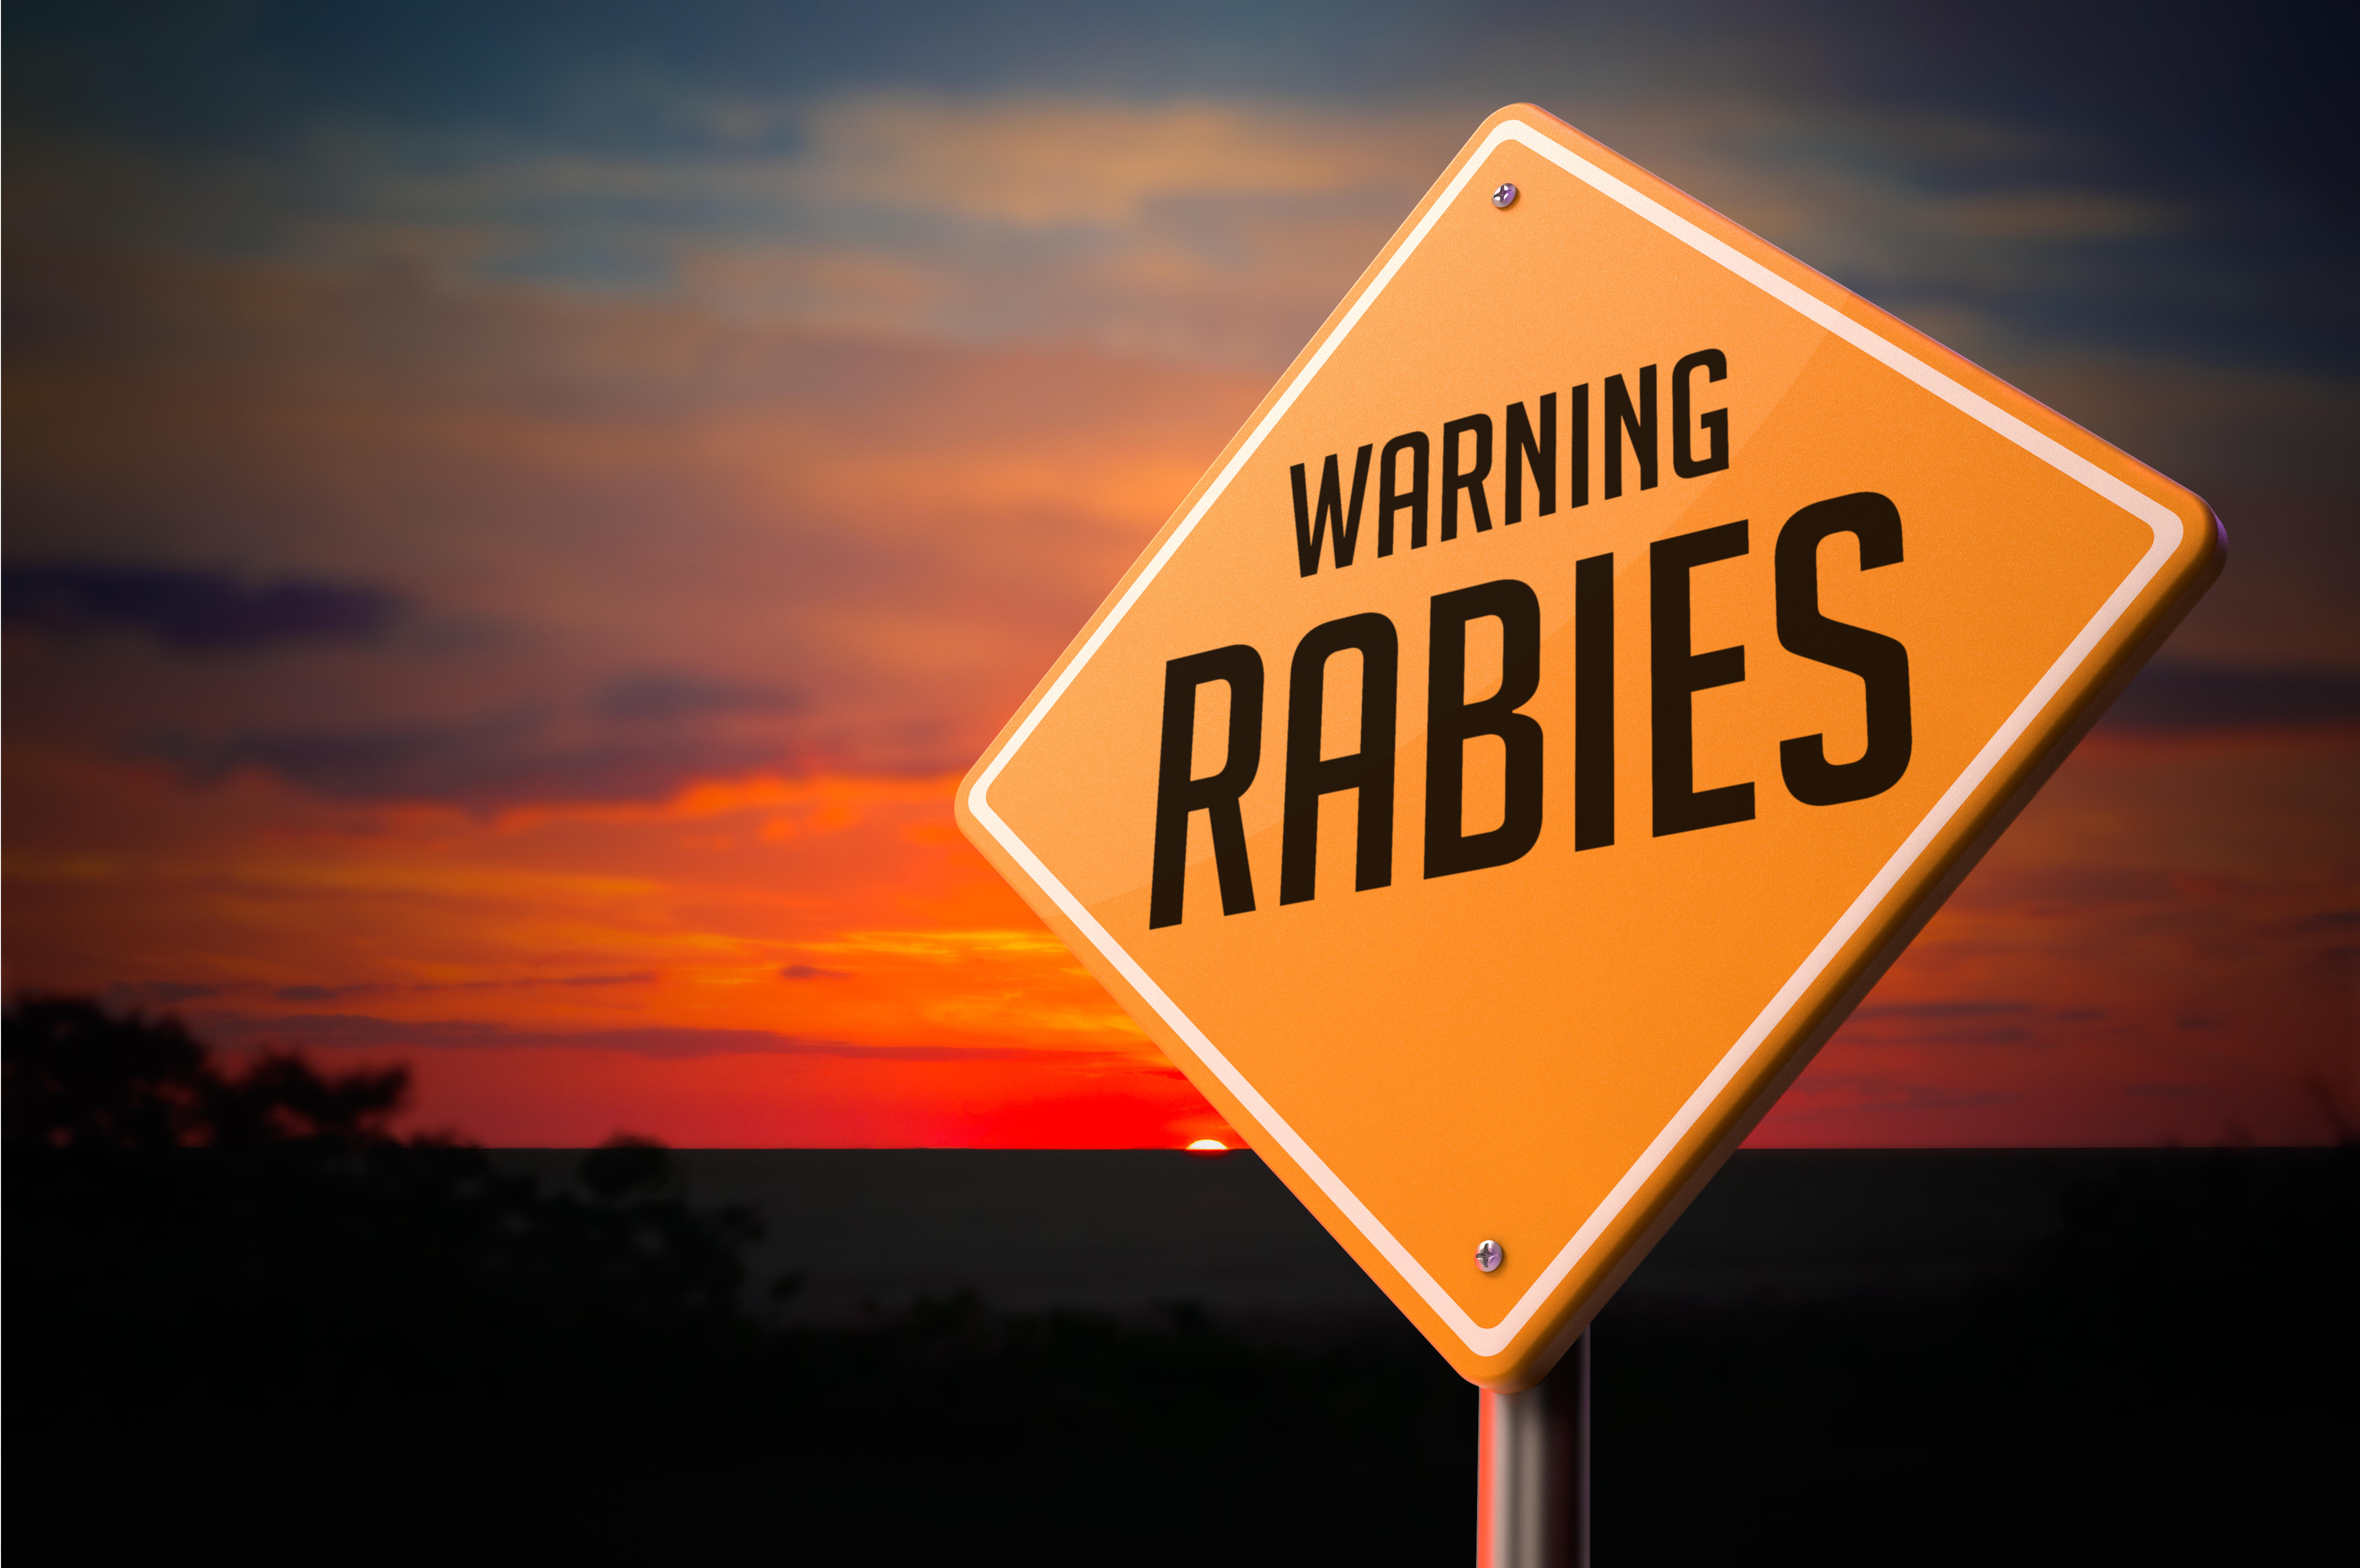 Rabies warning sign